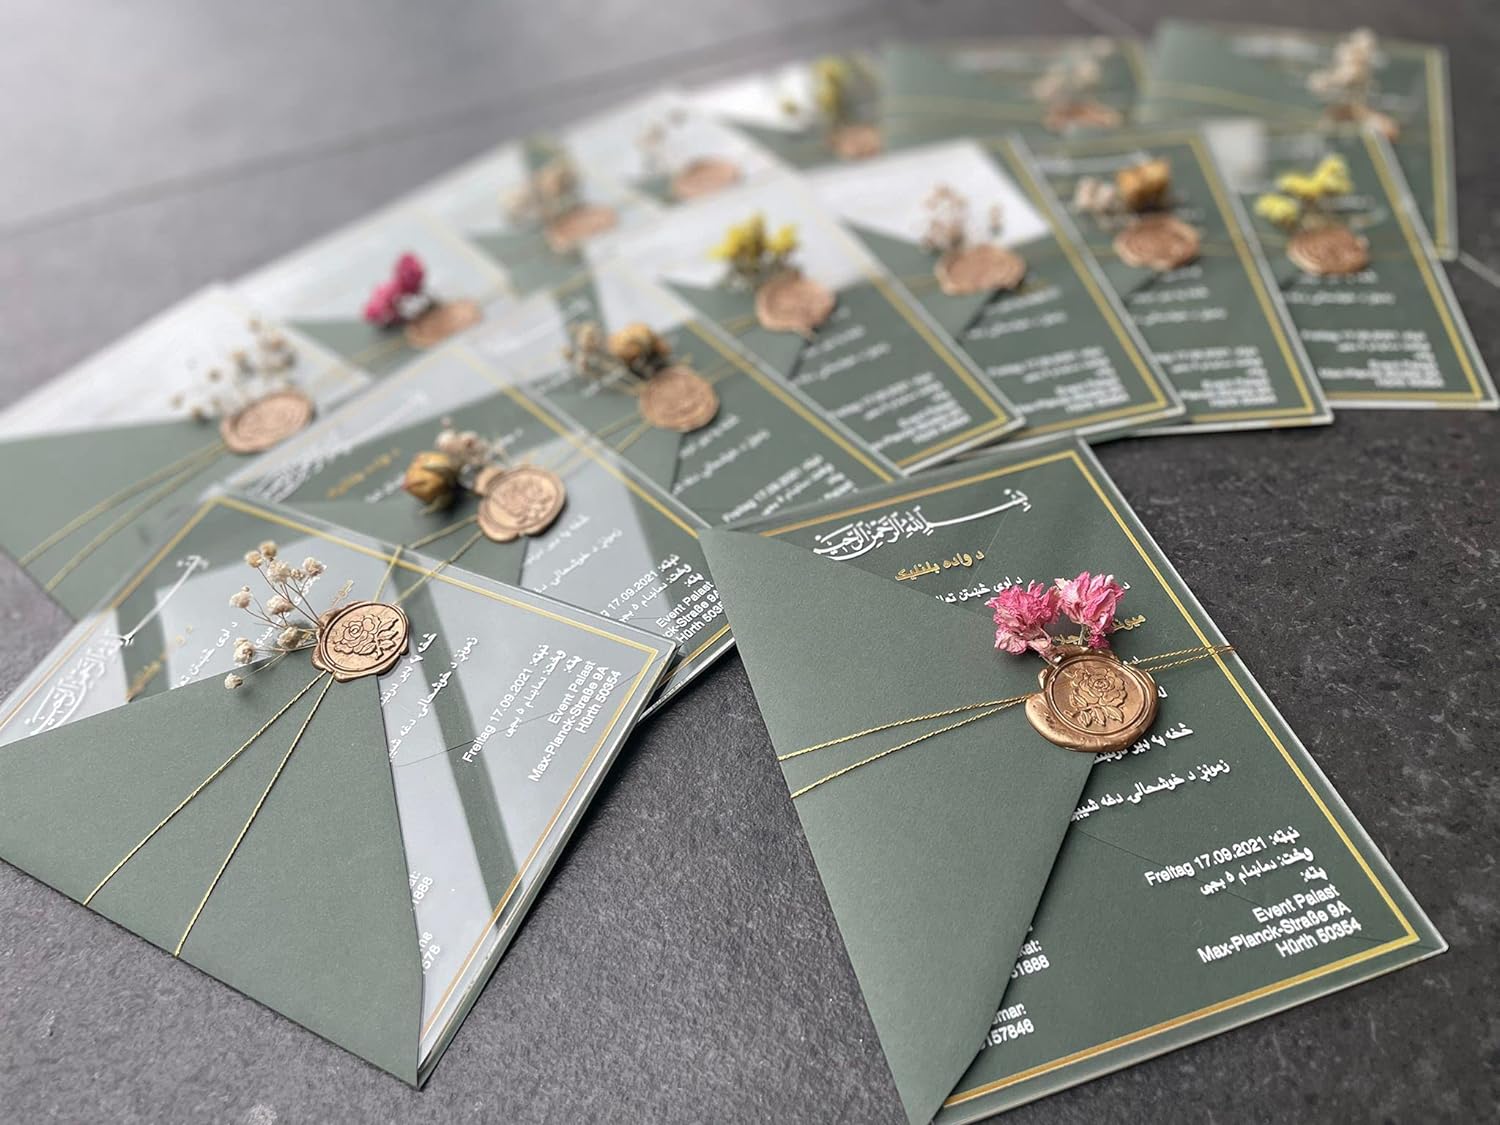 Modell 1 - Einladungskarten aus Acrylglas personalisierbar - Plexiglasscheiben für Hochzeitseinladung